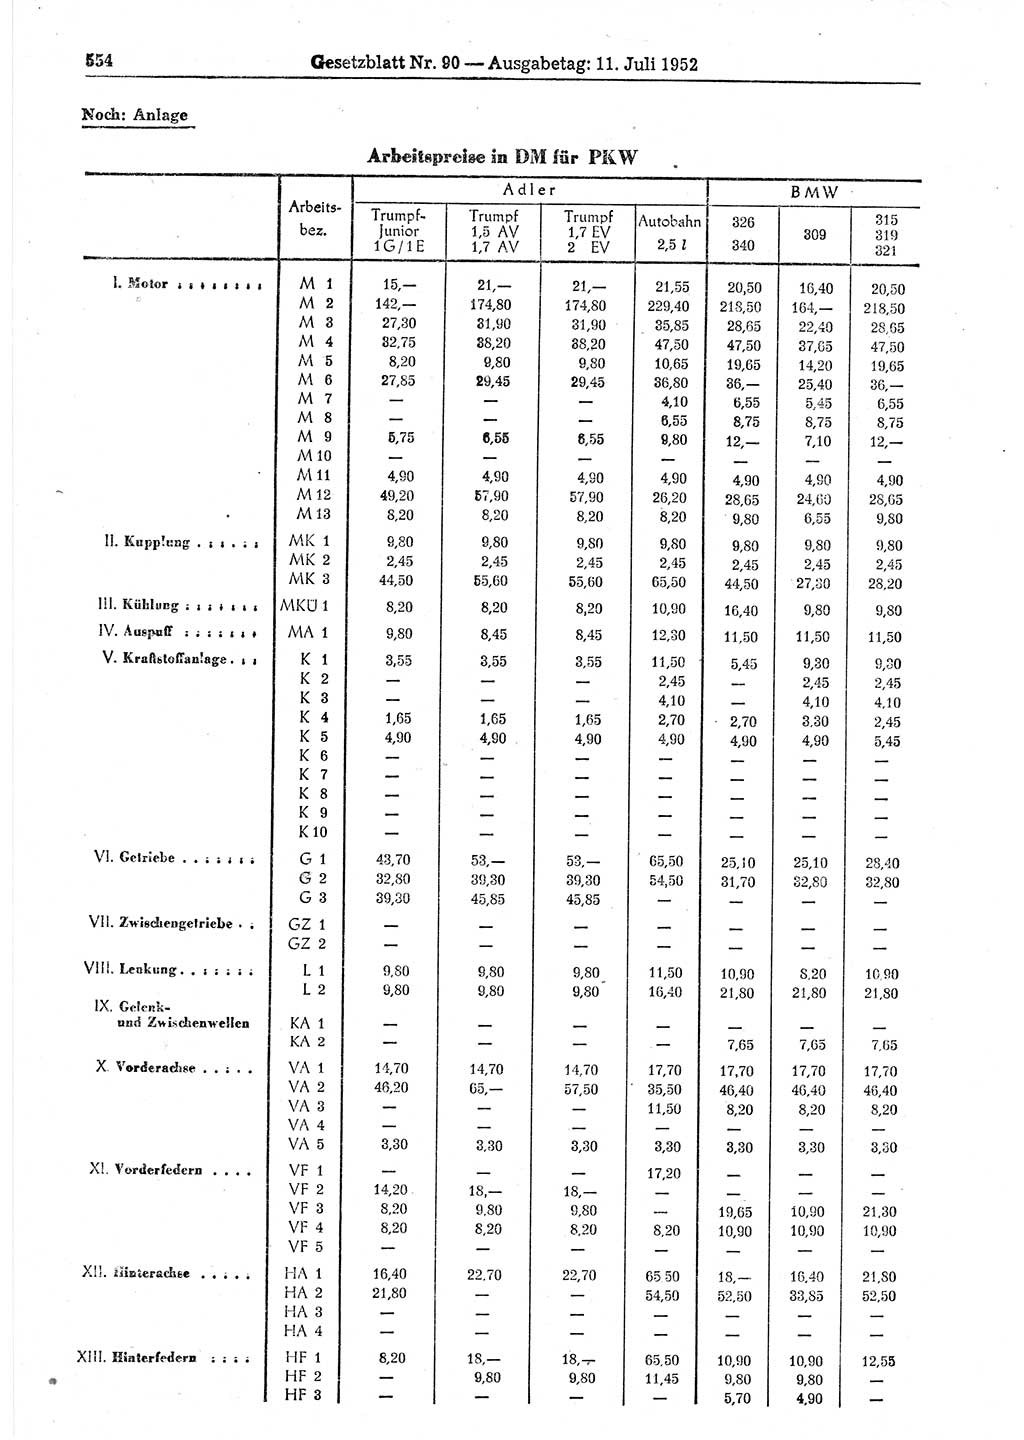 Gesetzblatt (GBl.) der Deutschen Demokratischen Republik (DDR) 1952, Seite 554 (GBl. DDR 1952, S. 554)